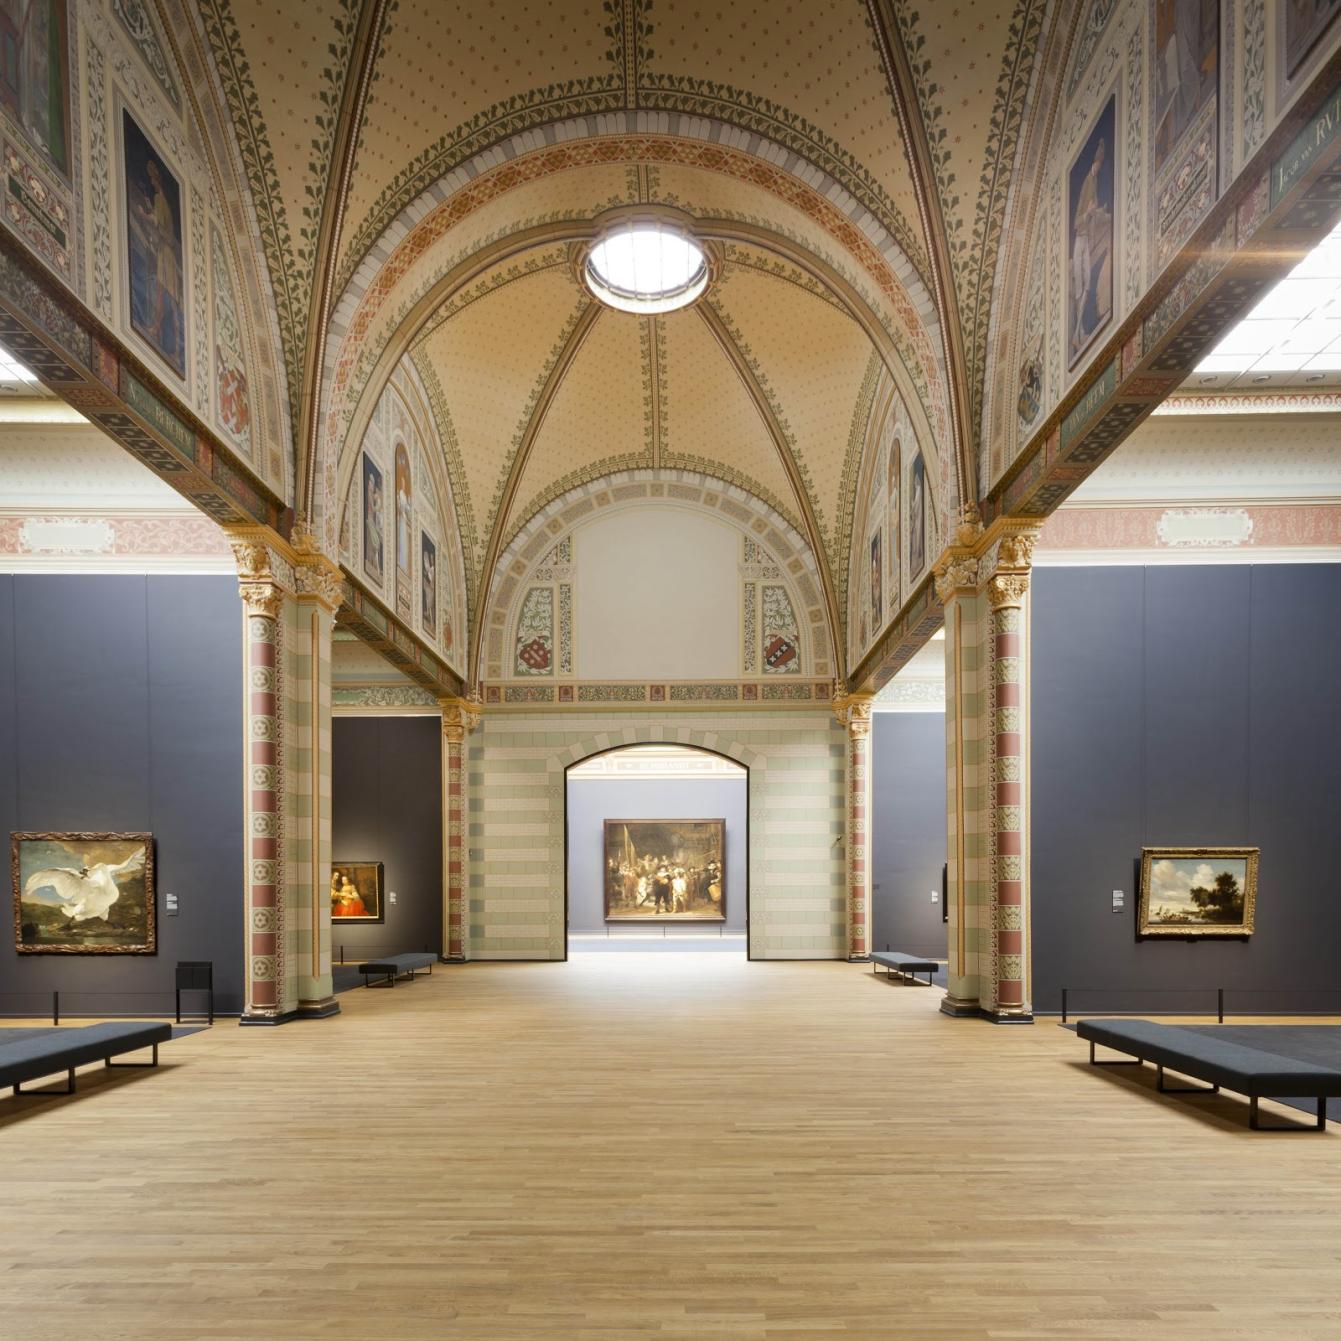 Eregalerij Rijkmsmuseum